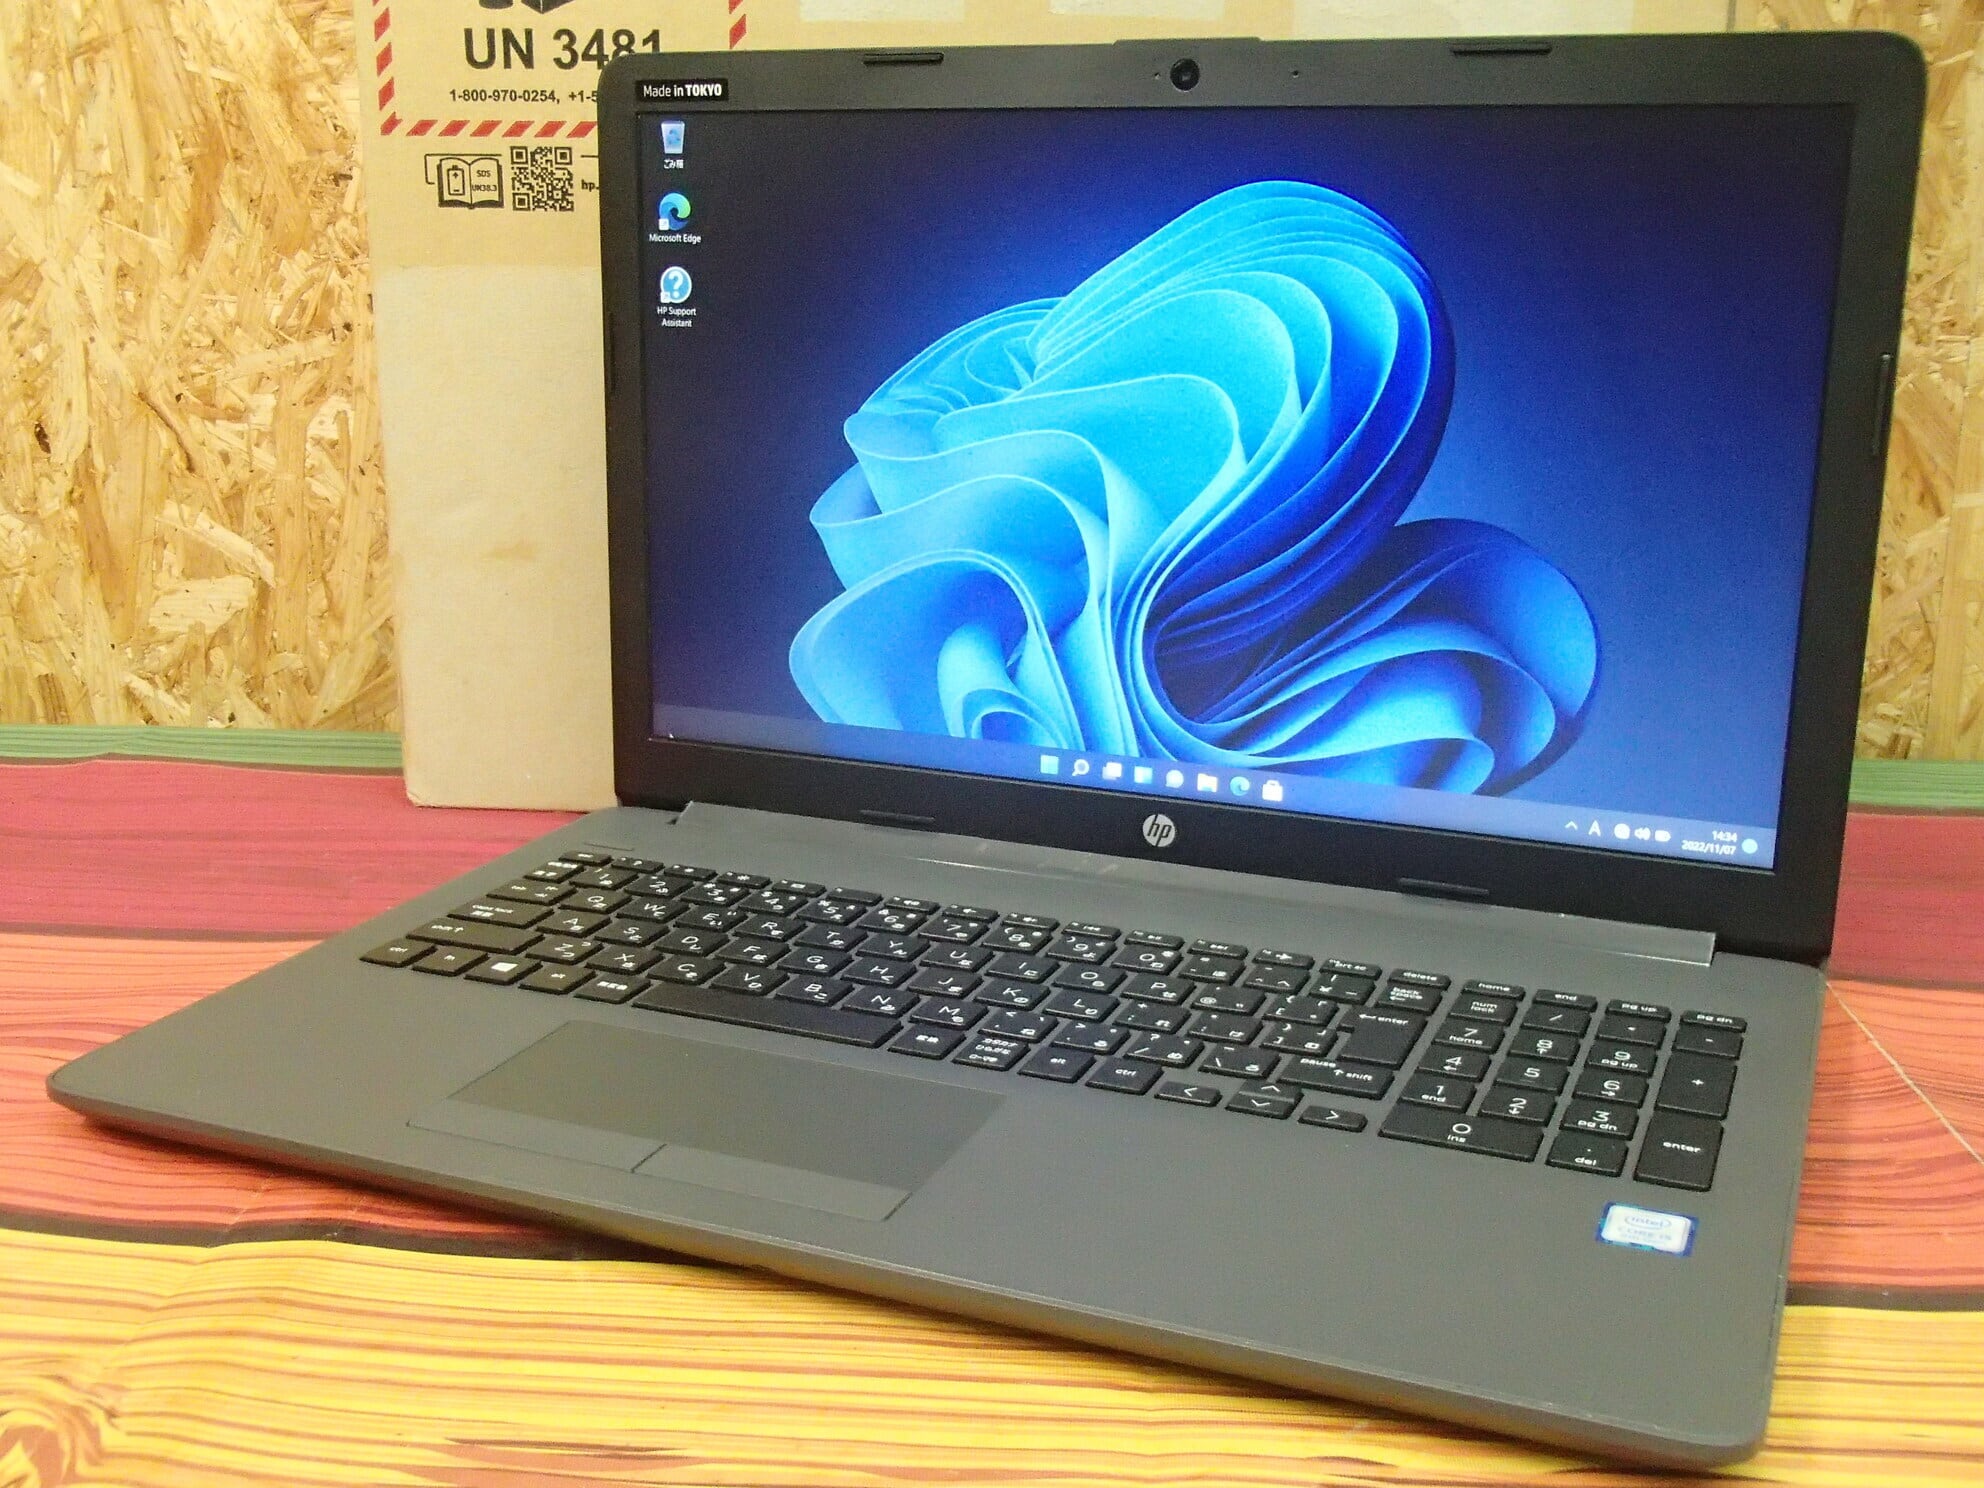 【Windows11】【新入荷】【スタイリッシュ】 HP 250 G7 第8世代 Core i5 8265U/1.60GHz 4GB 新品HDD1TB スーパーマルチ 64bit WPSOffice 15.6インチ HD カメラ テンキー 無線LAN パソコン ノートパソコン PC Notebook